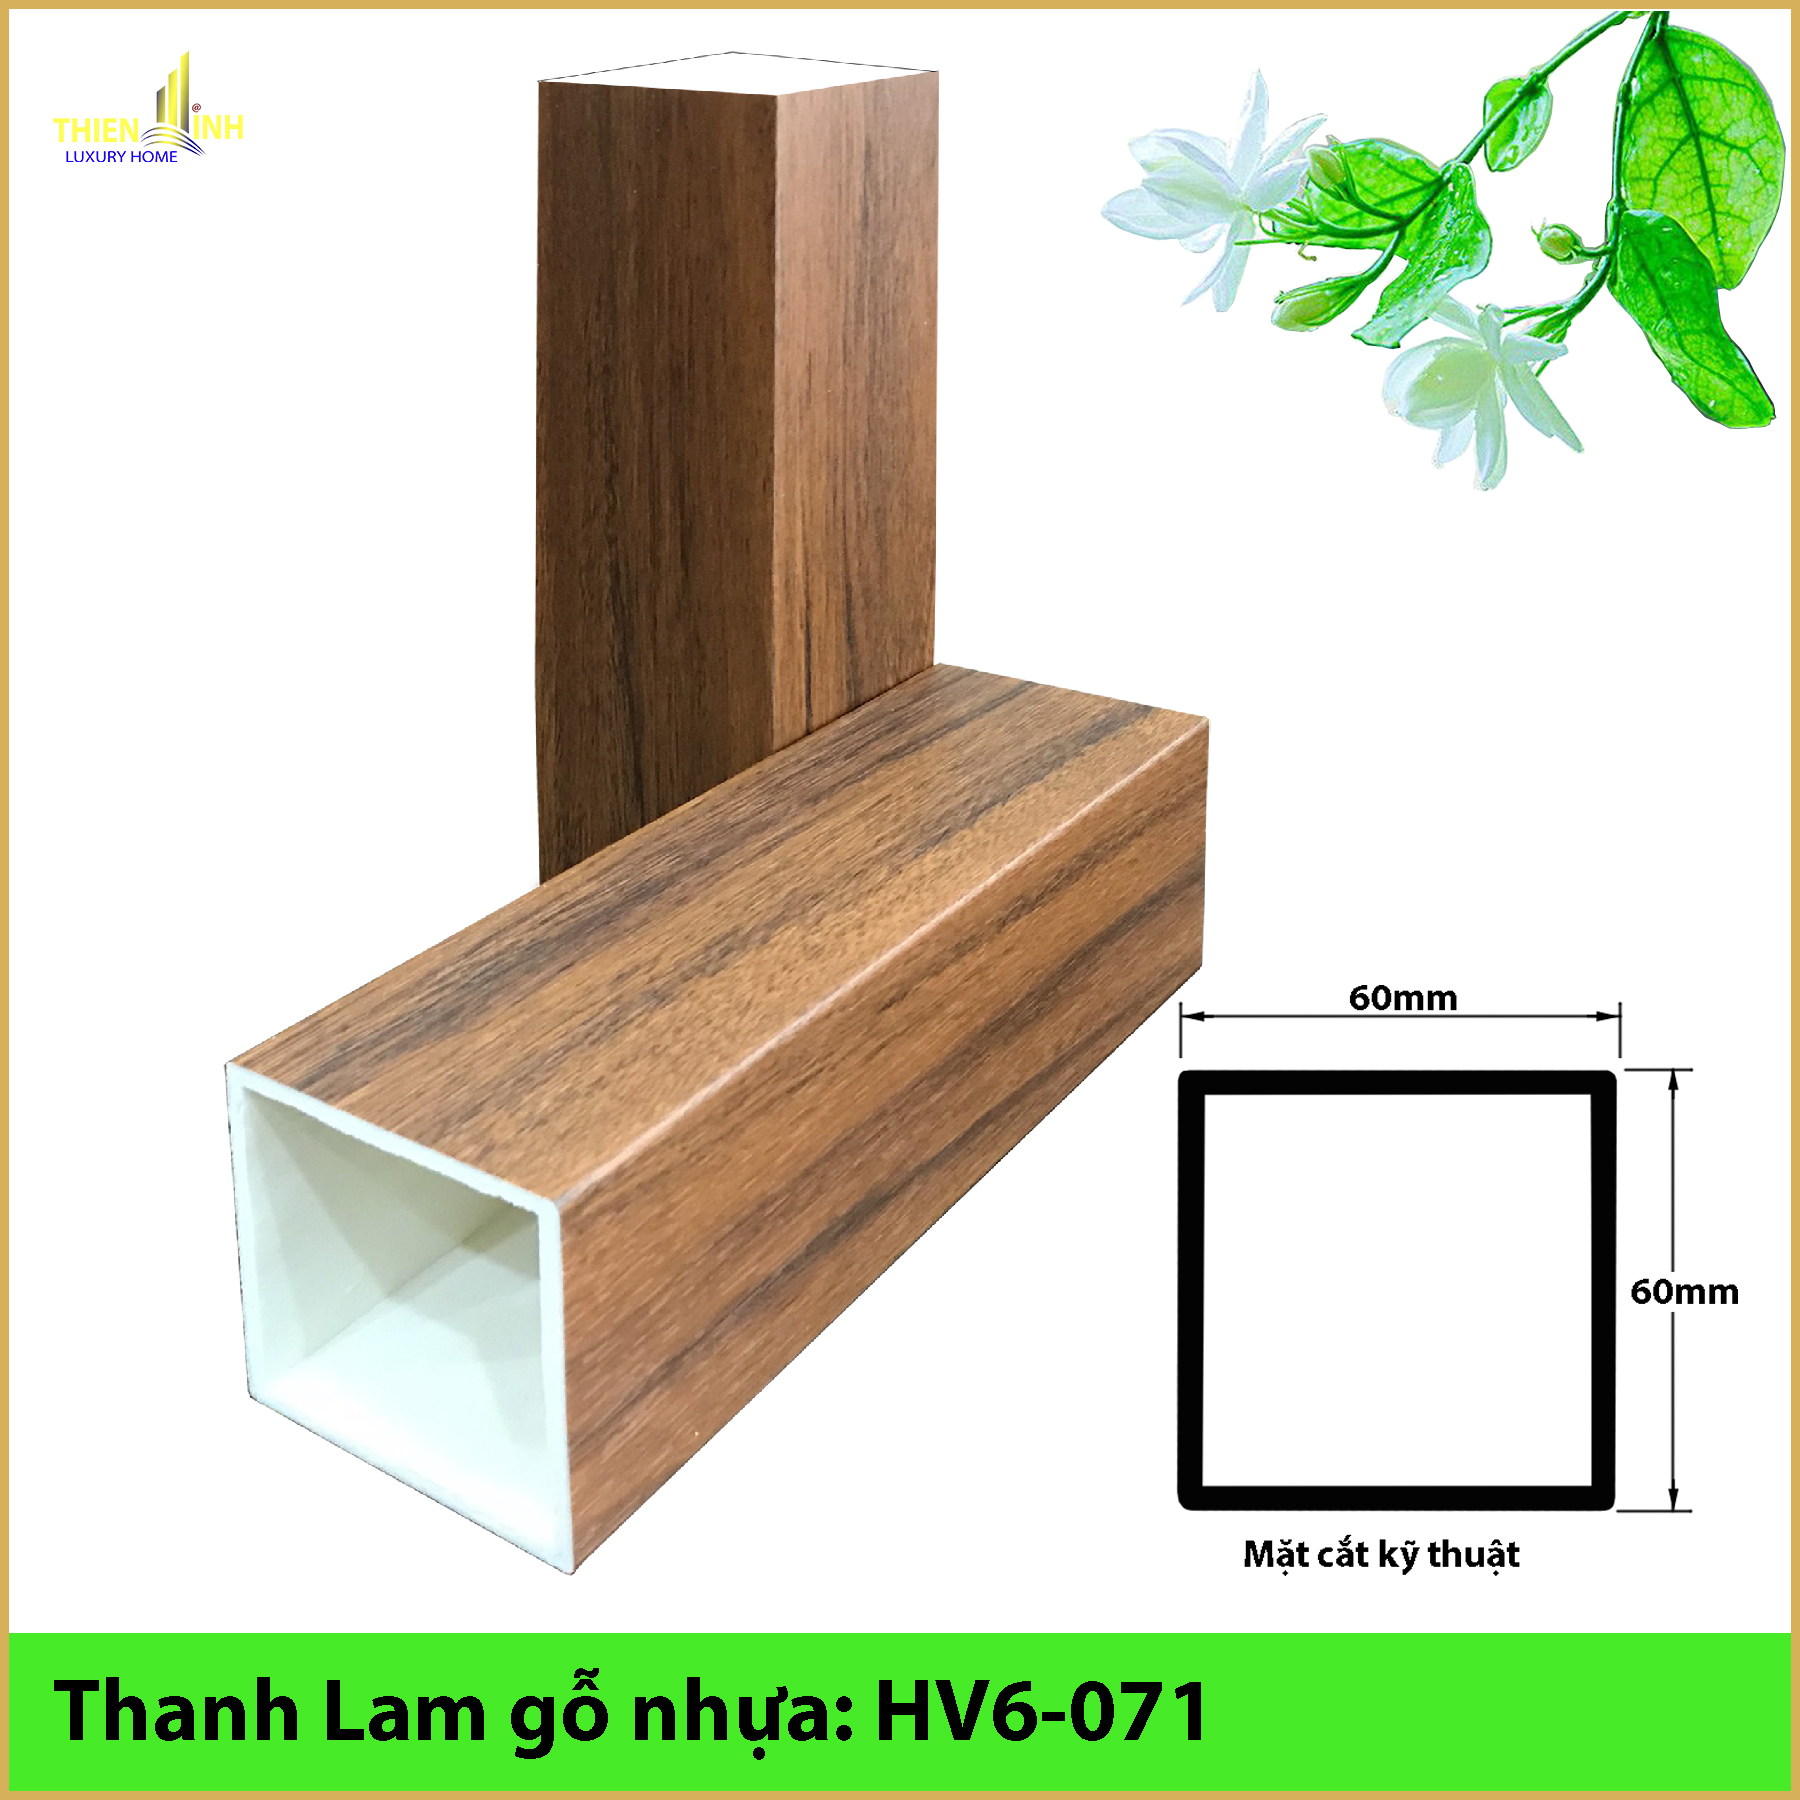 Thanh Lam gỗ nhựa HV6-071